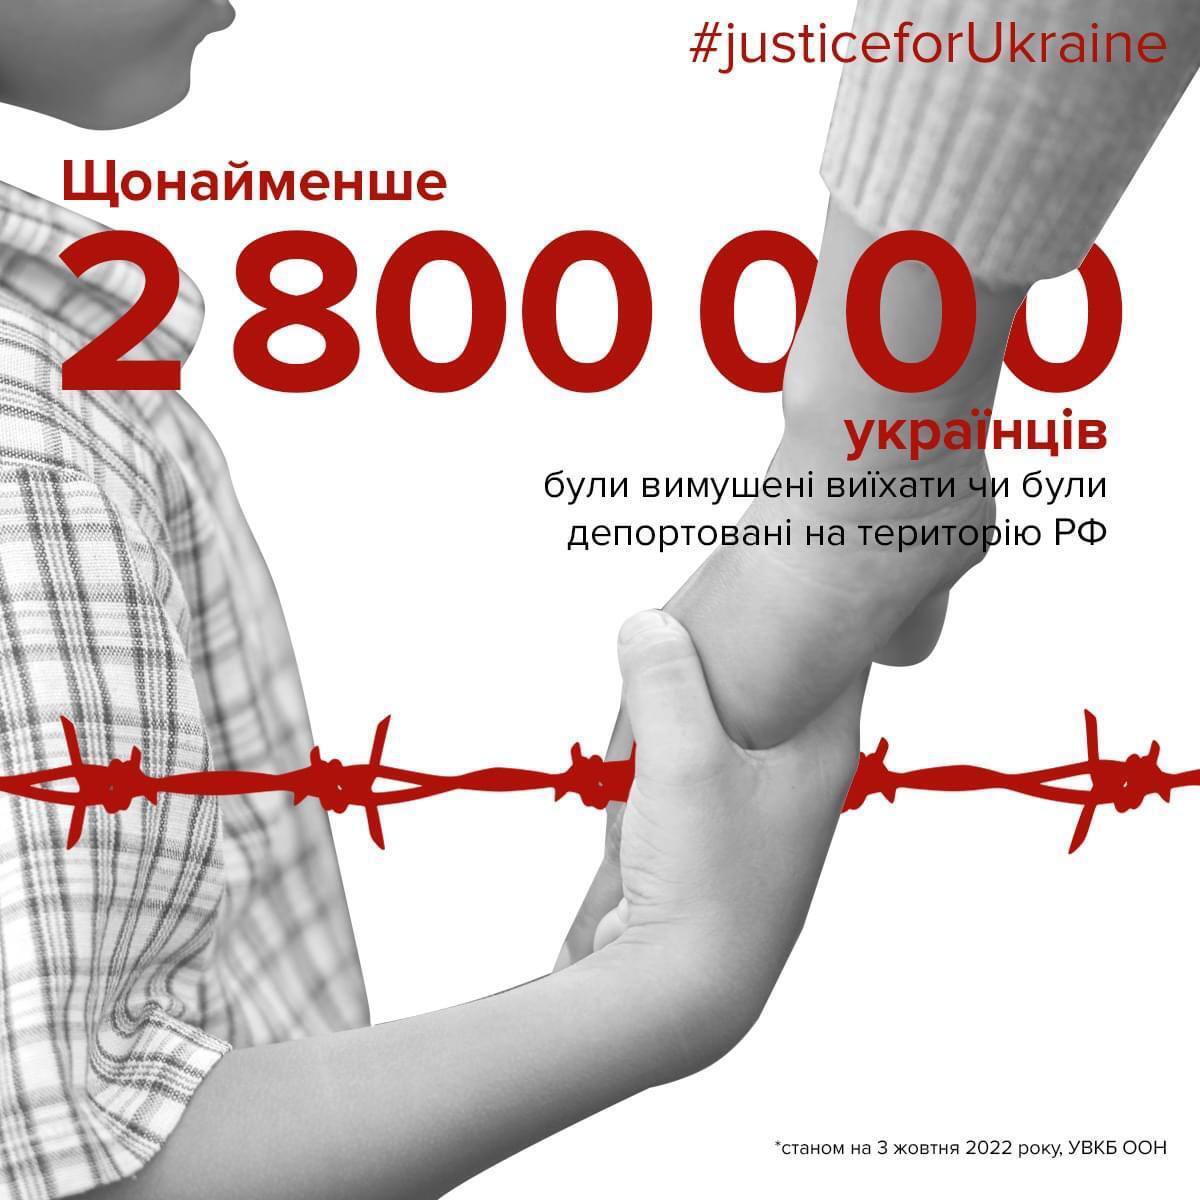 Майже 3 млн українців вимушено виїхали чи були депортовані до РФ, – омбудсмен